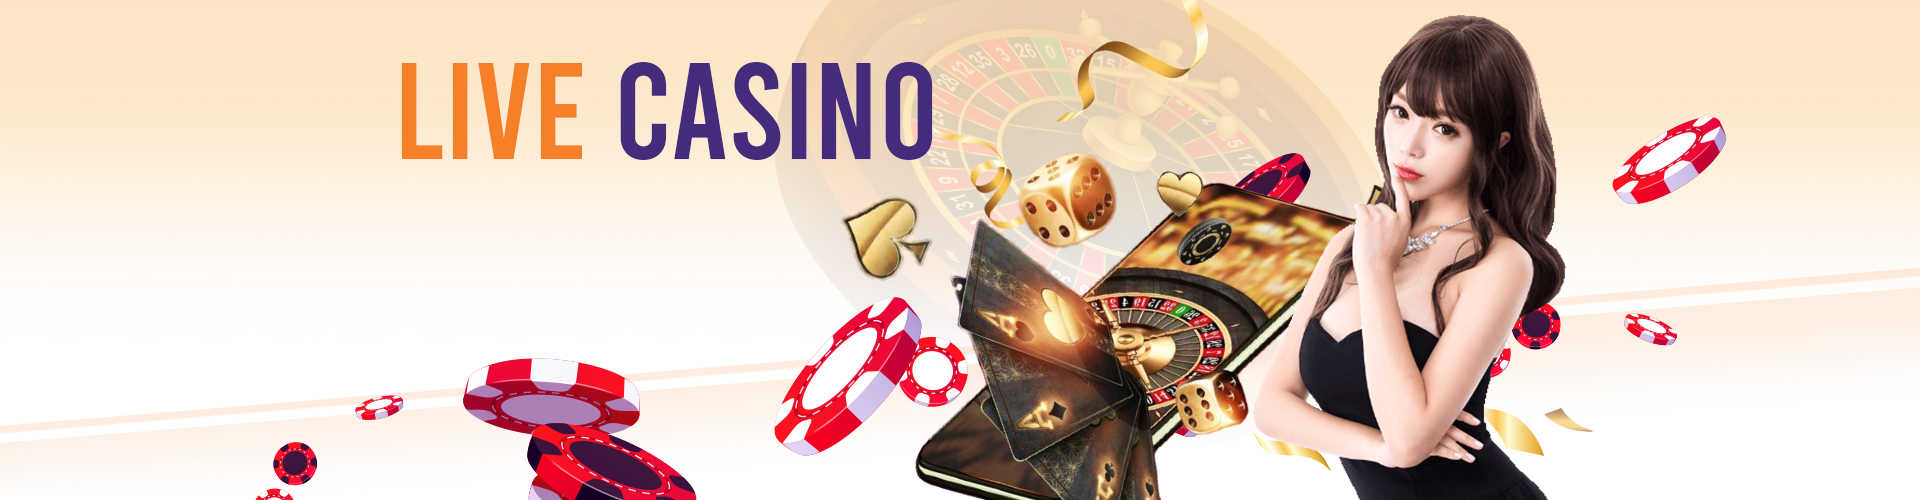 G6 Casino Live Casino-Banner